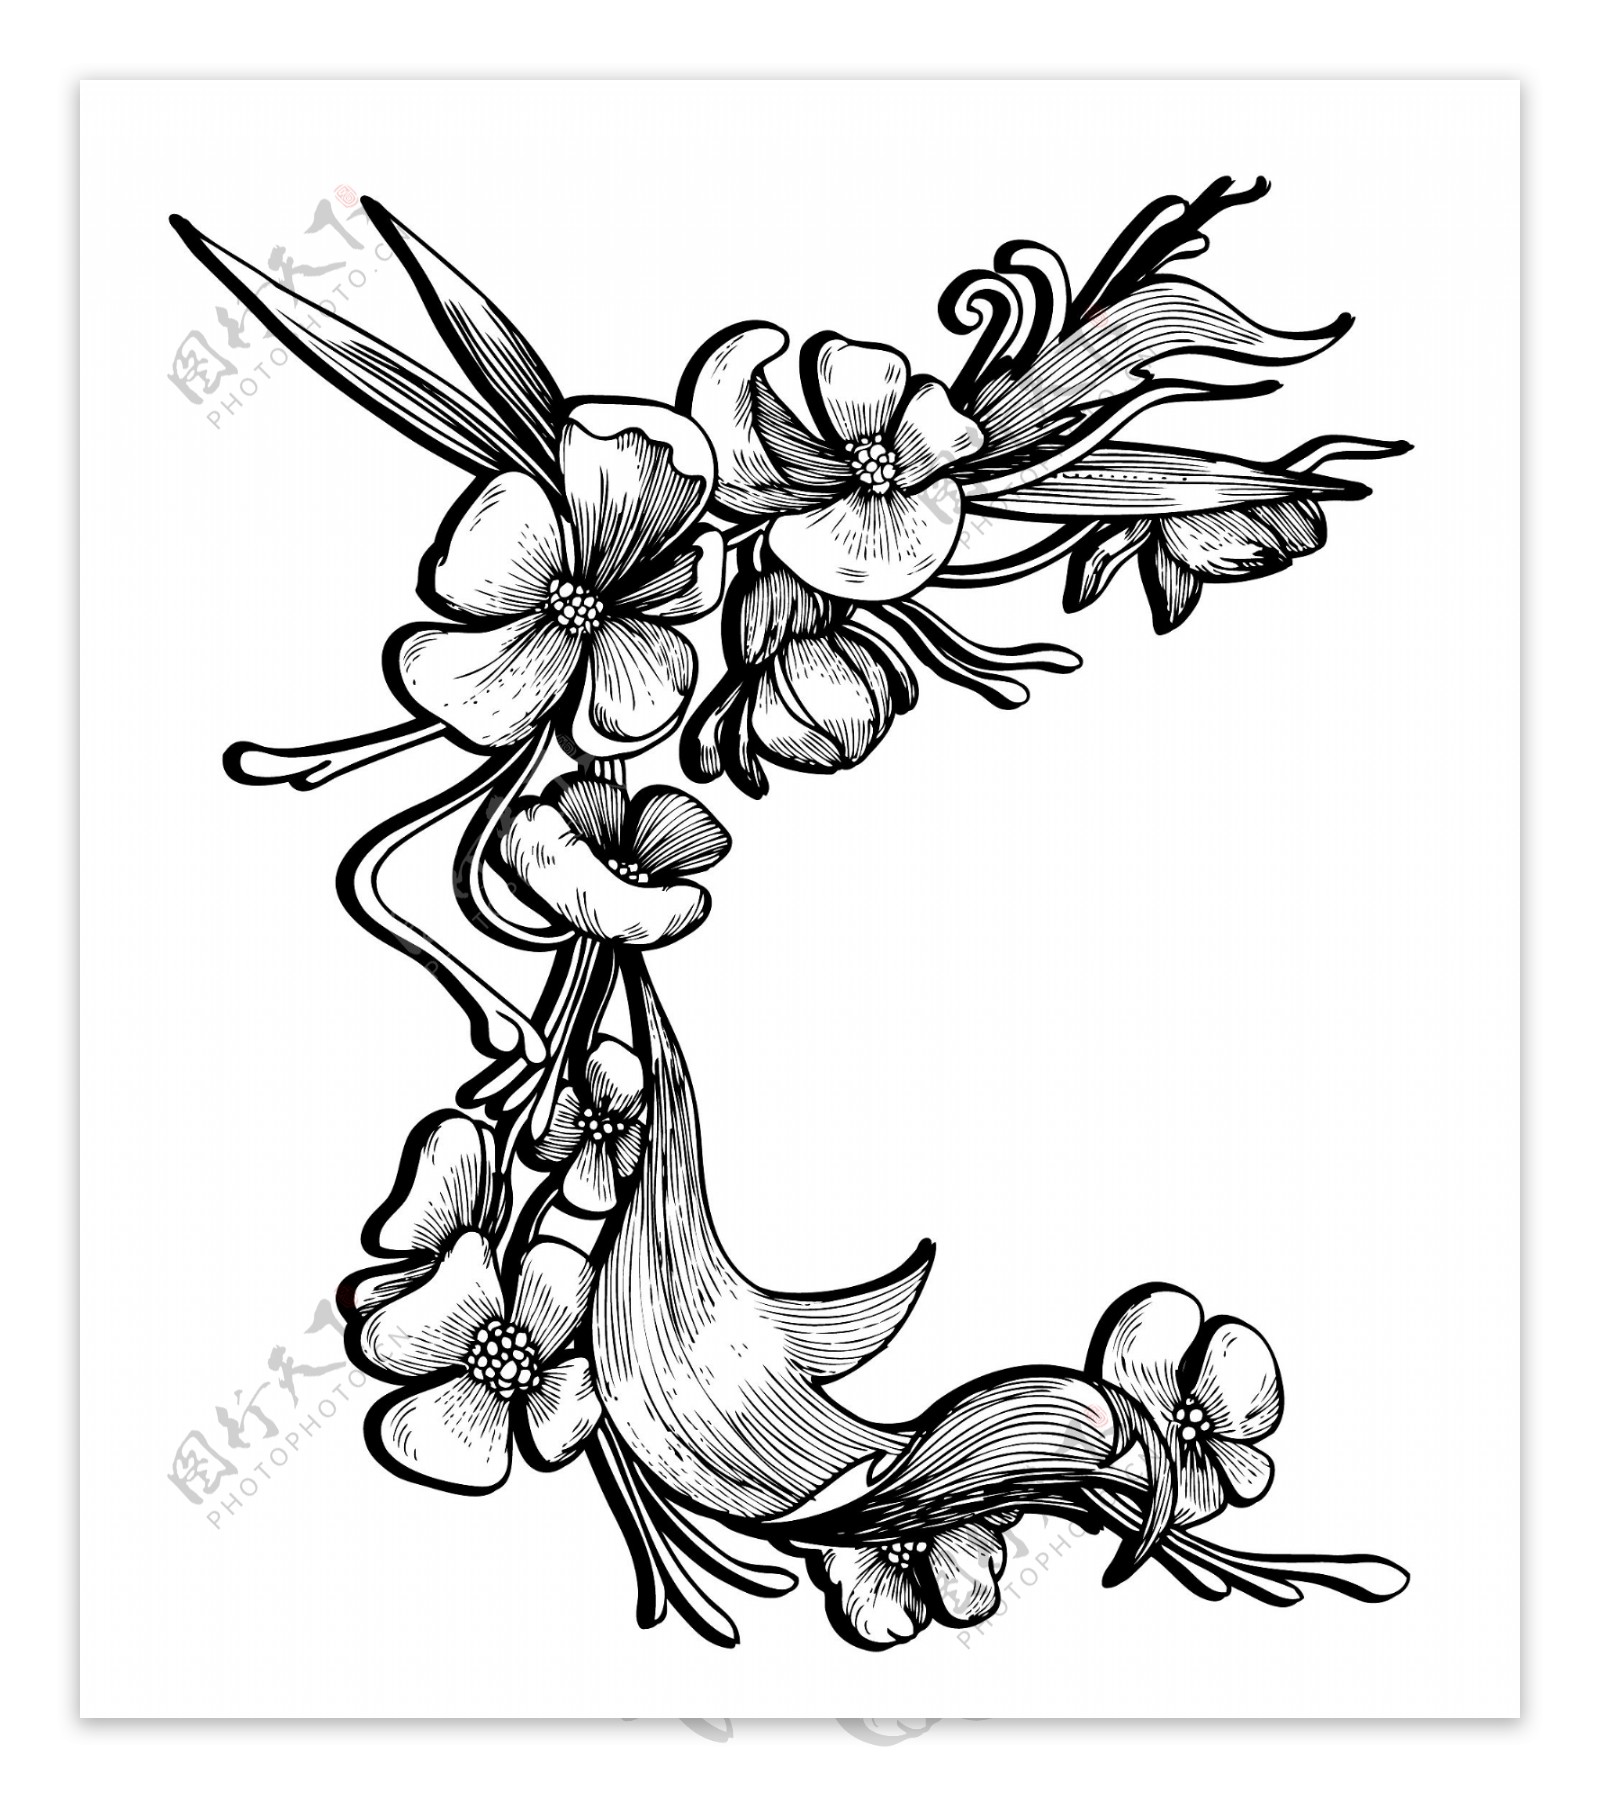 巴洛克风格的花卉元素矢量插图